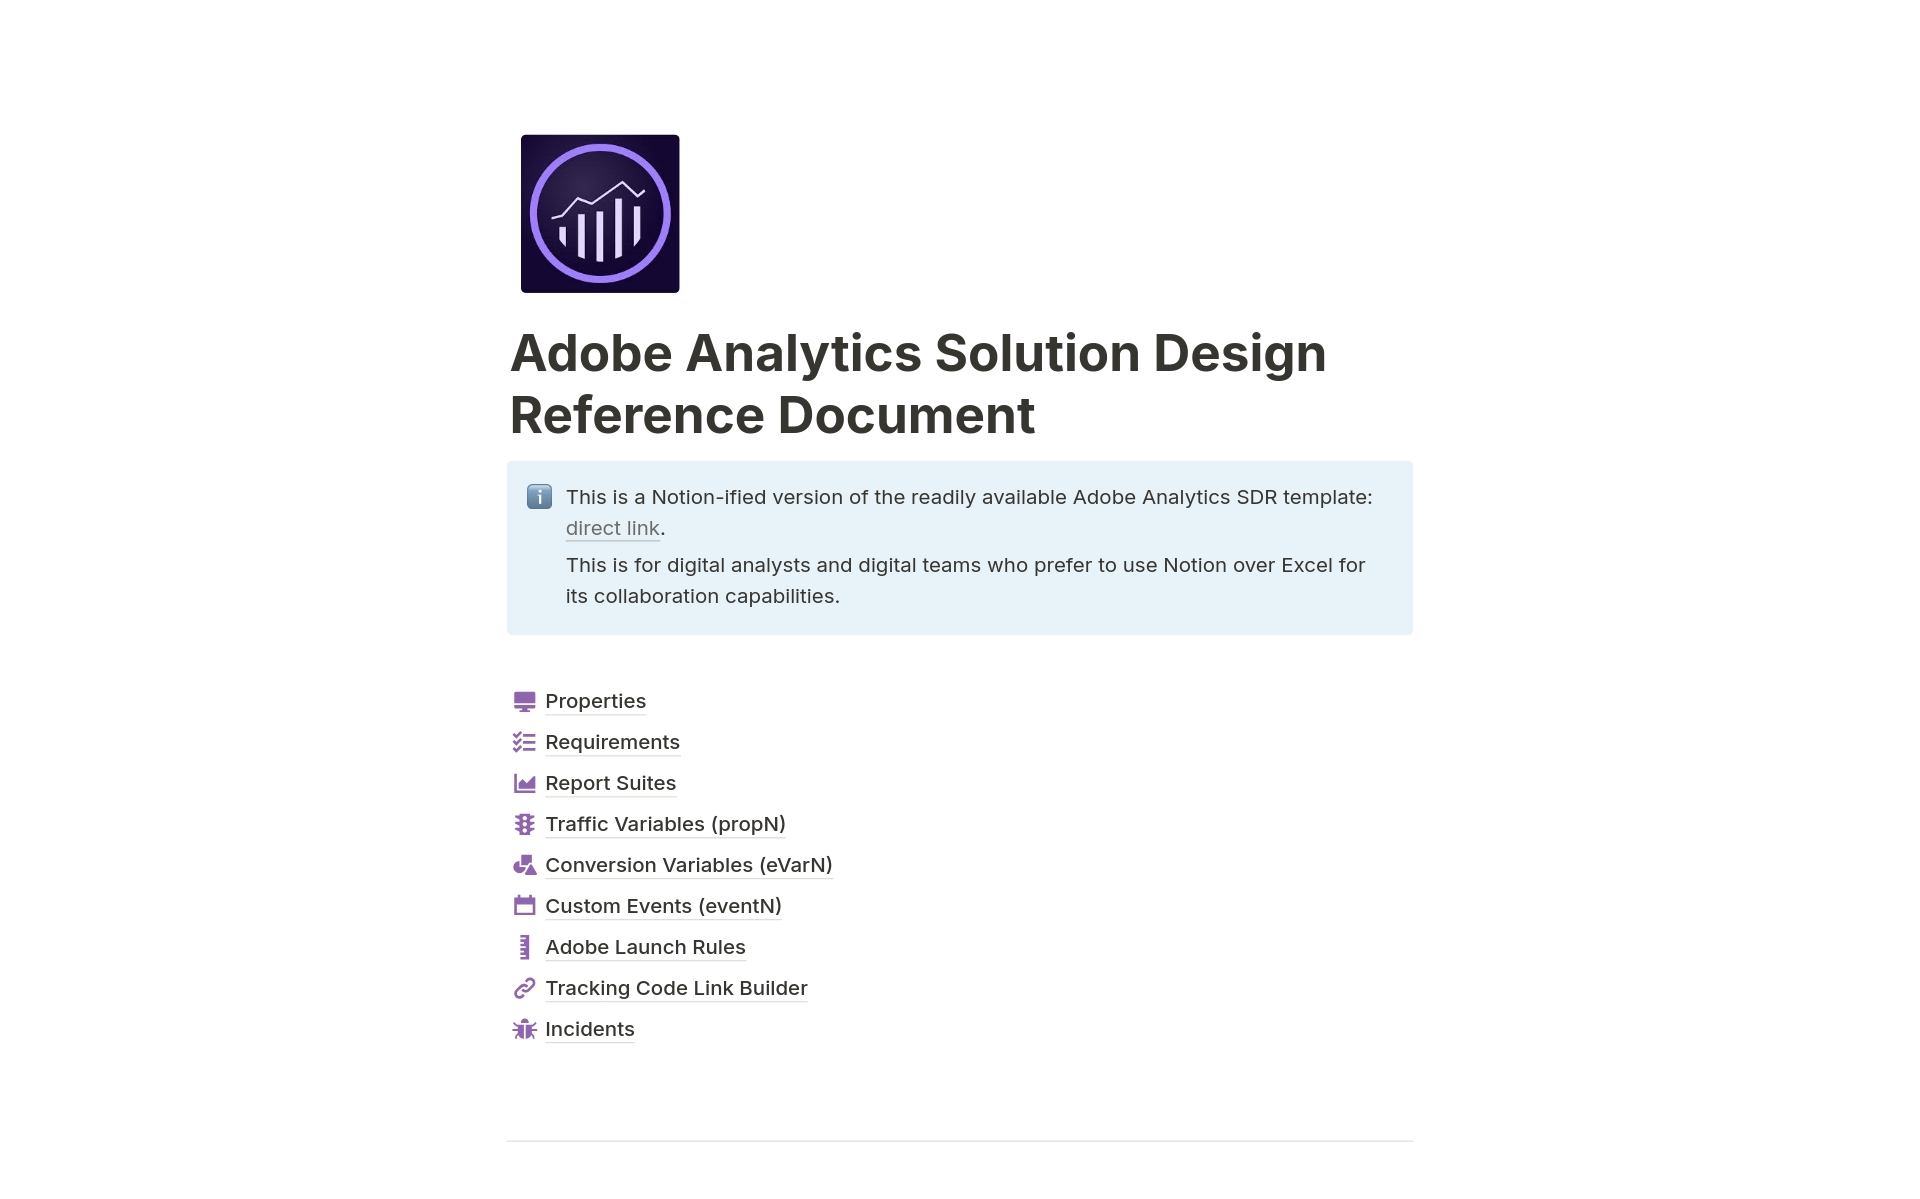 Vista previa de una plantilla para Adobe Analytics SDR